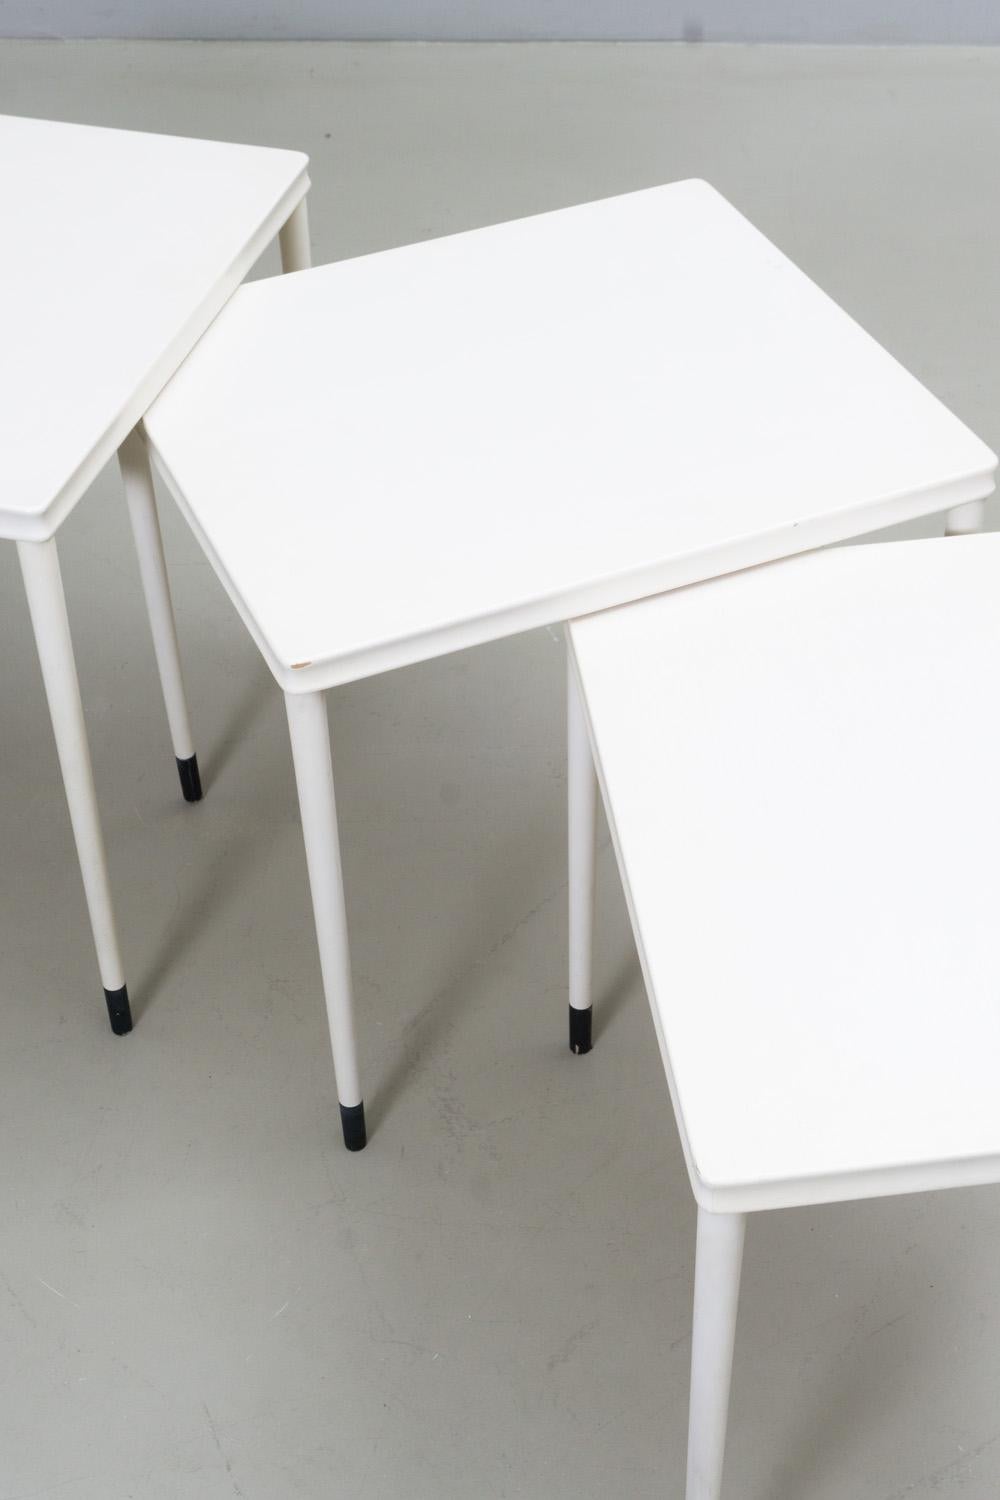 Cet ensemble de trois tables de tailles différentes présente un design élégant et minimal avec des détails raffinés, tels que les bords cannelés et le pied laqué noir. Ils sont fabriqués en bois avec un vernis de ponçage blanc.

Dora Lennartz